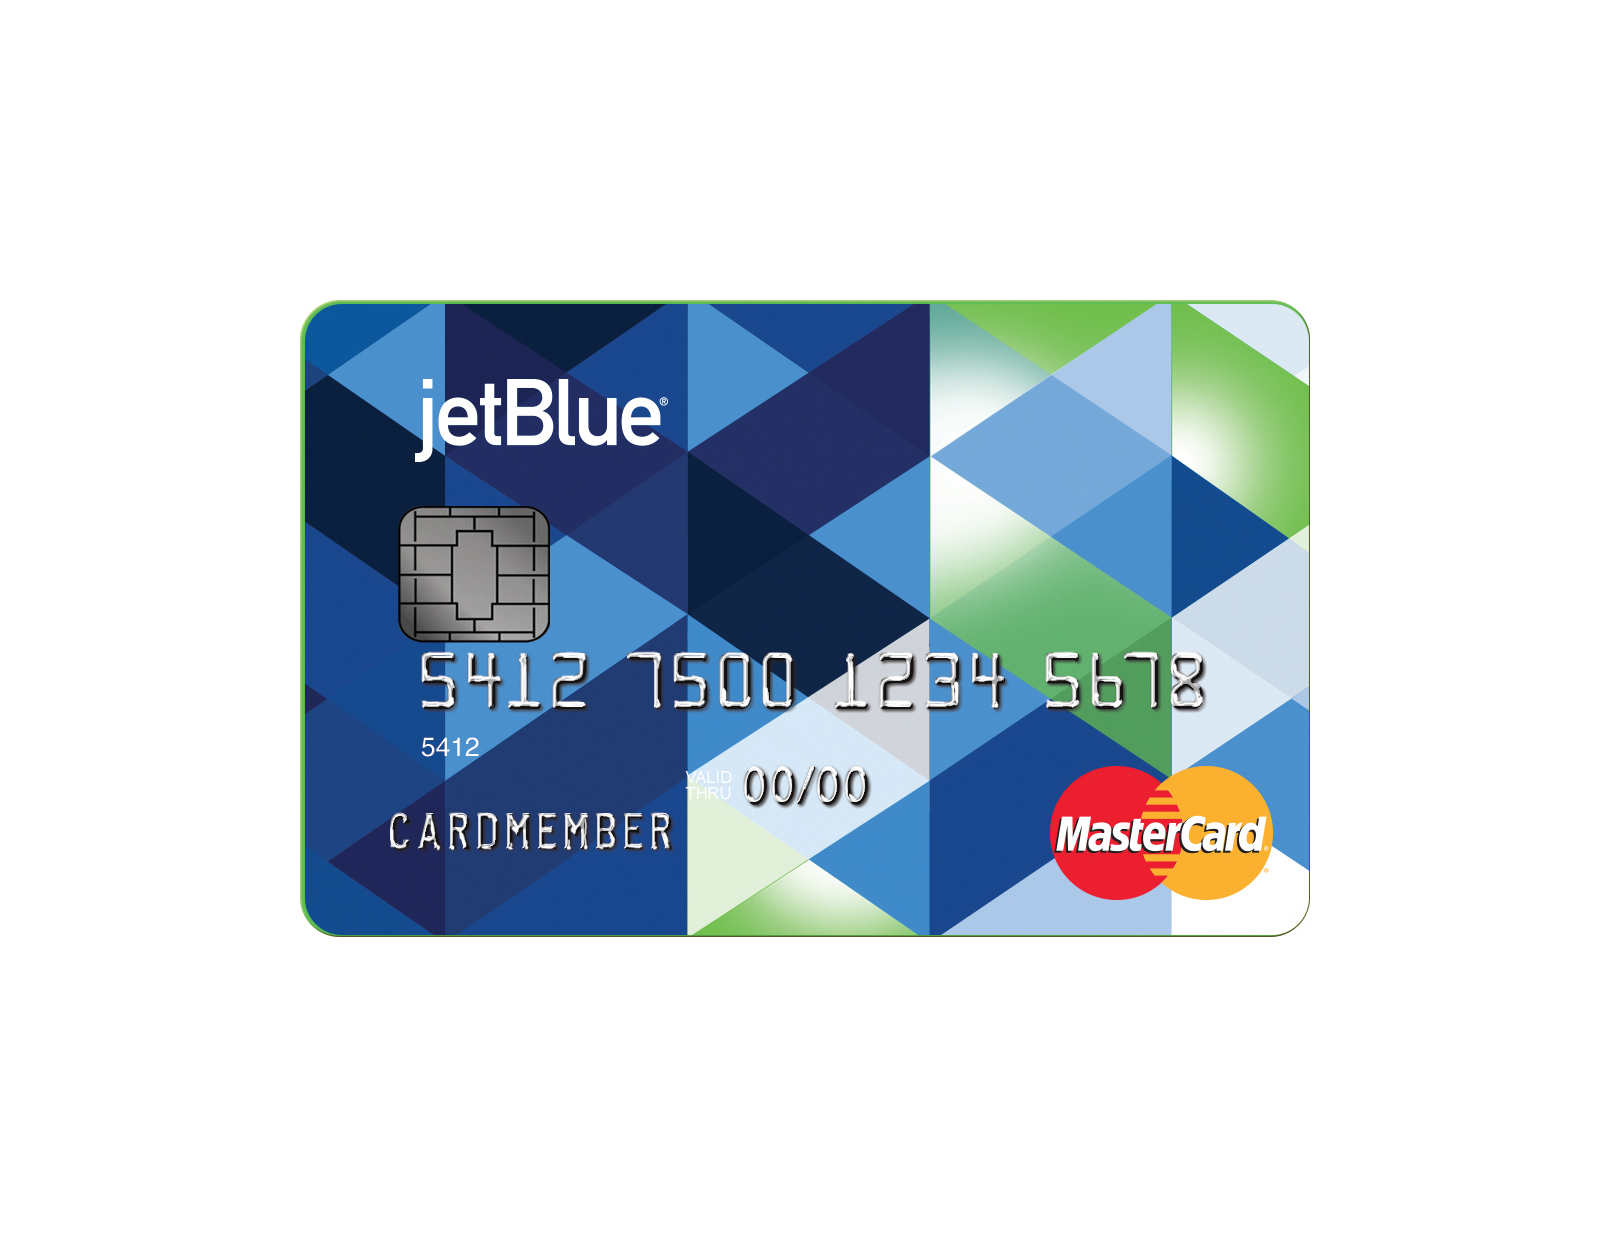 The New JetBlue Card